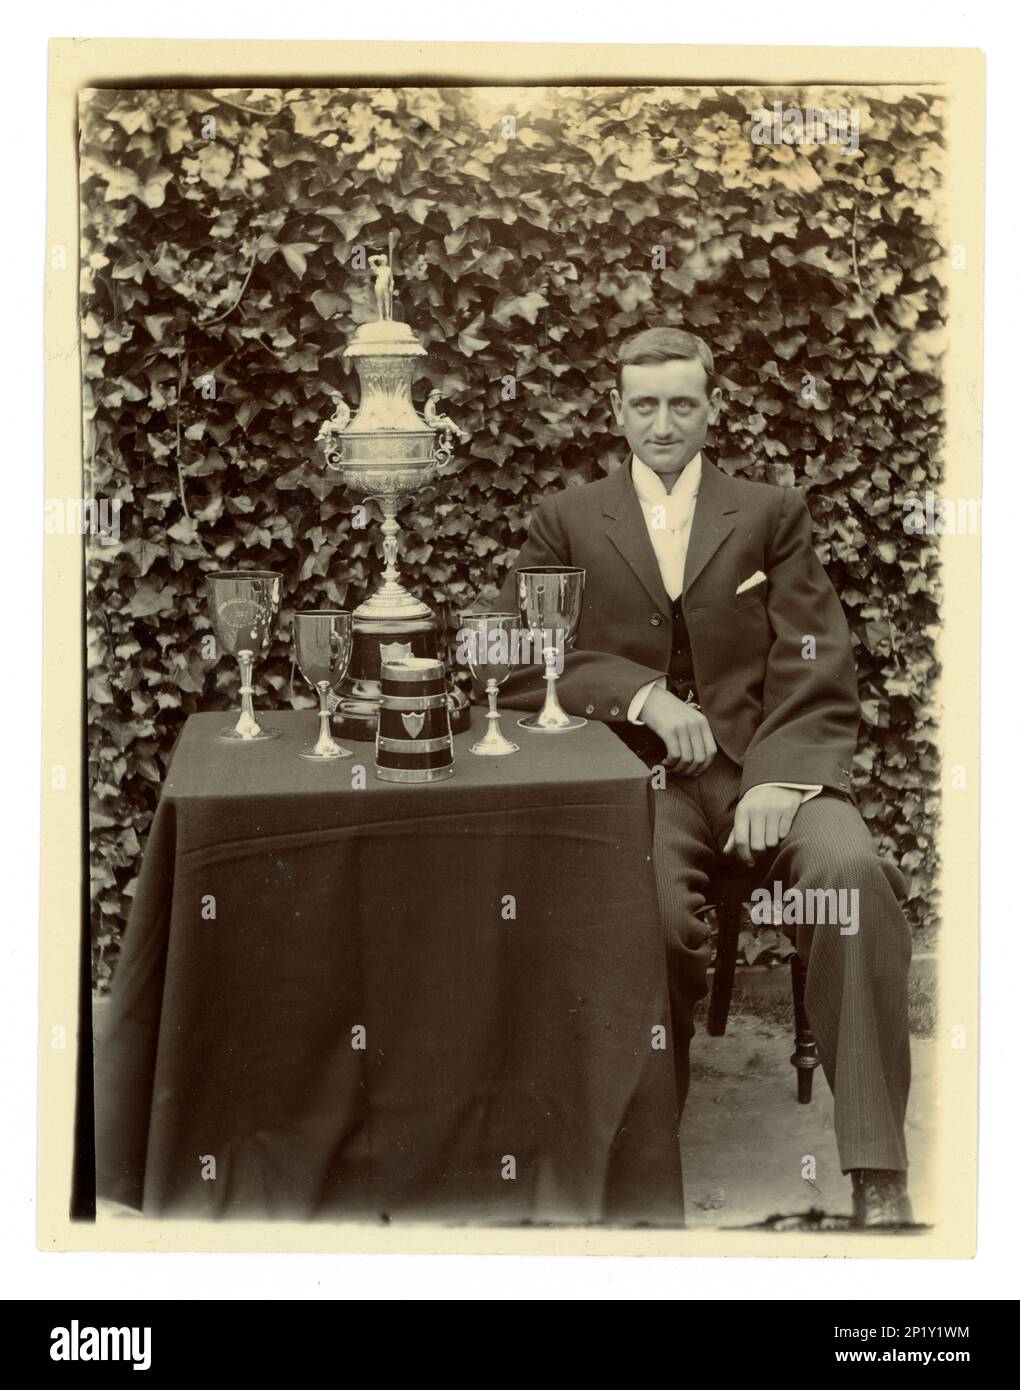 Photo victorienne originale de gent, sur une table, il y a un grand vase de défi de Worcester, / régate trophée pour l'aviron, et d'autres coupes, éventuellement membre d'une équipe de quatre en boîte. Région de Worcester, Royaume-Uni vers 1897-1899 Banque D'Images